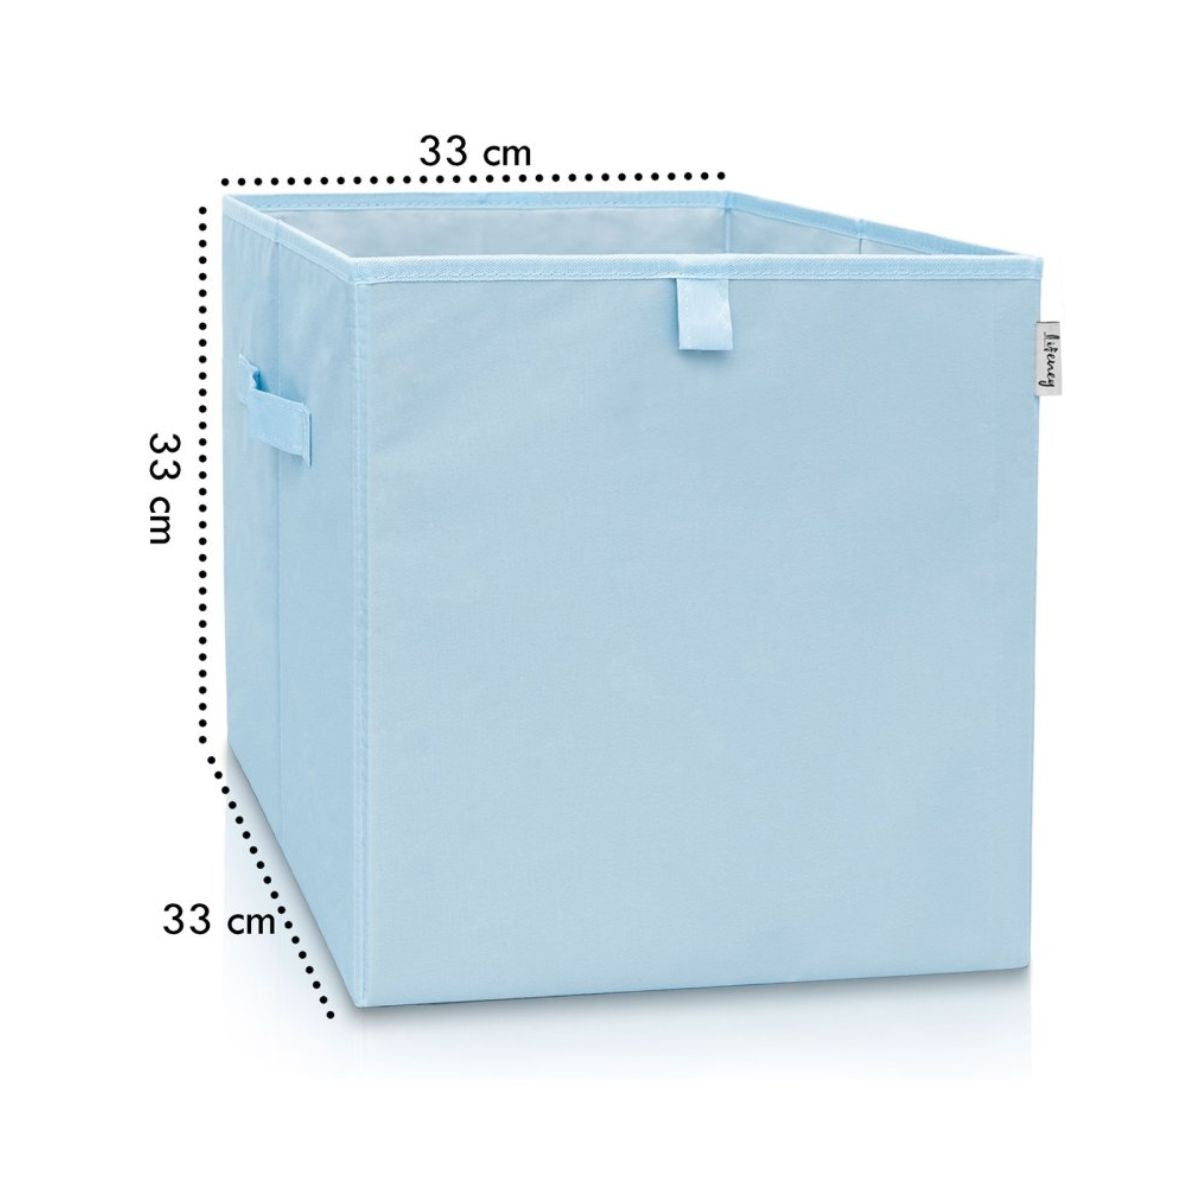 Boîte de rangement coloris bleu clair, compatible avec l'étagère IKEA KALLAX Lifeney